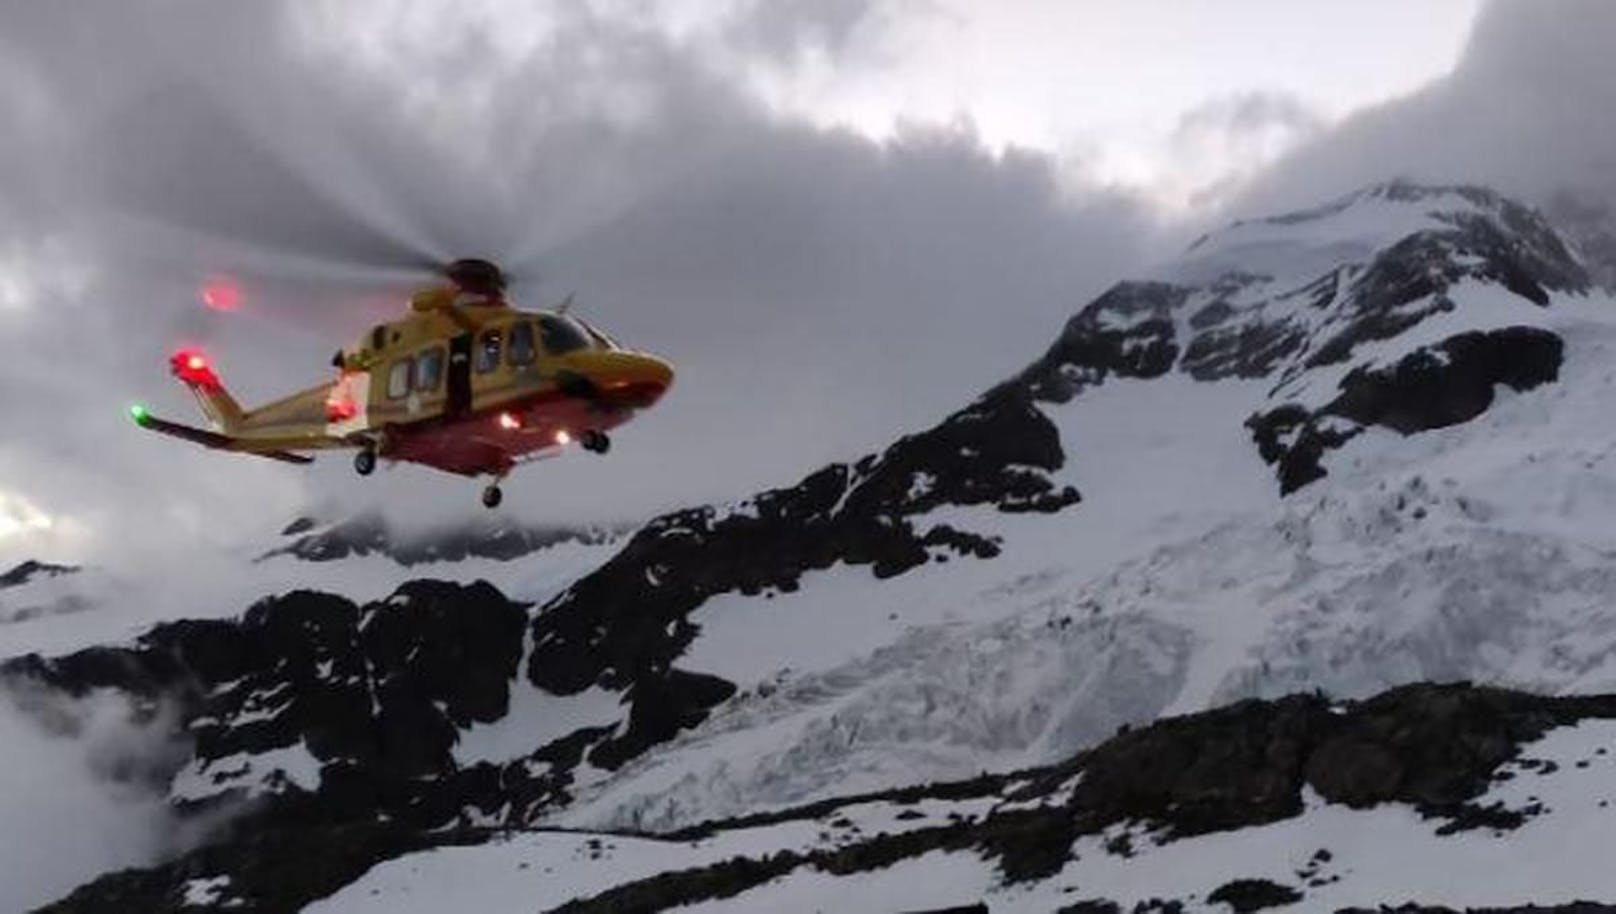 Der Rettungsheli der Air Zermatt konnte im Sturm nicht landen und musste wieder abdrehen.